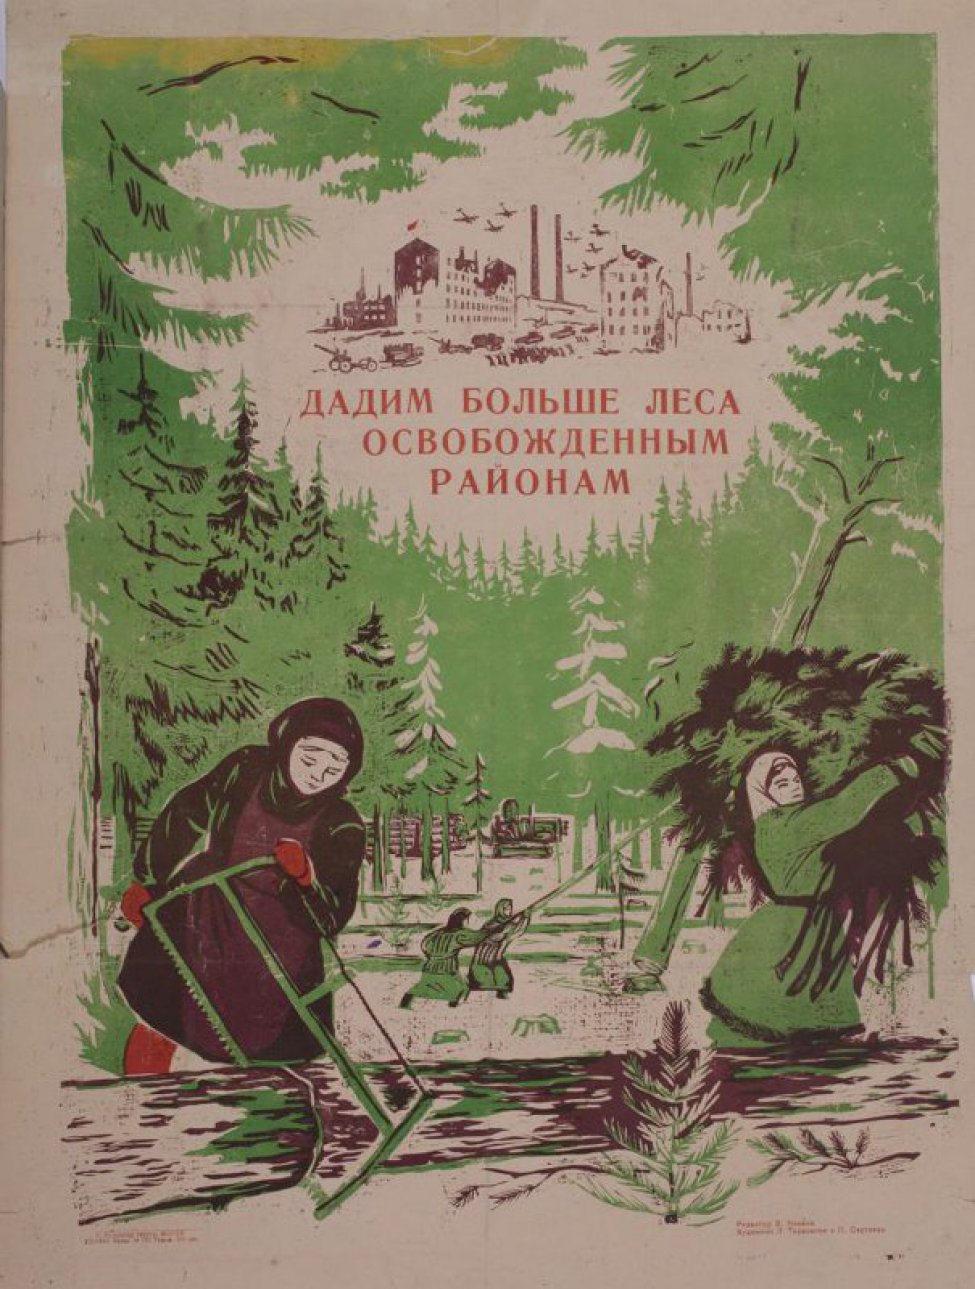 Изображены женщины лесорубы в лесу, одна с пилой подпиливает дерево, другая несет ветви на плече. Вверху виден завод, и летающие самолеты.